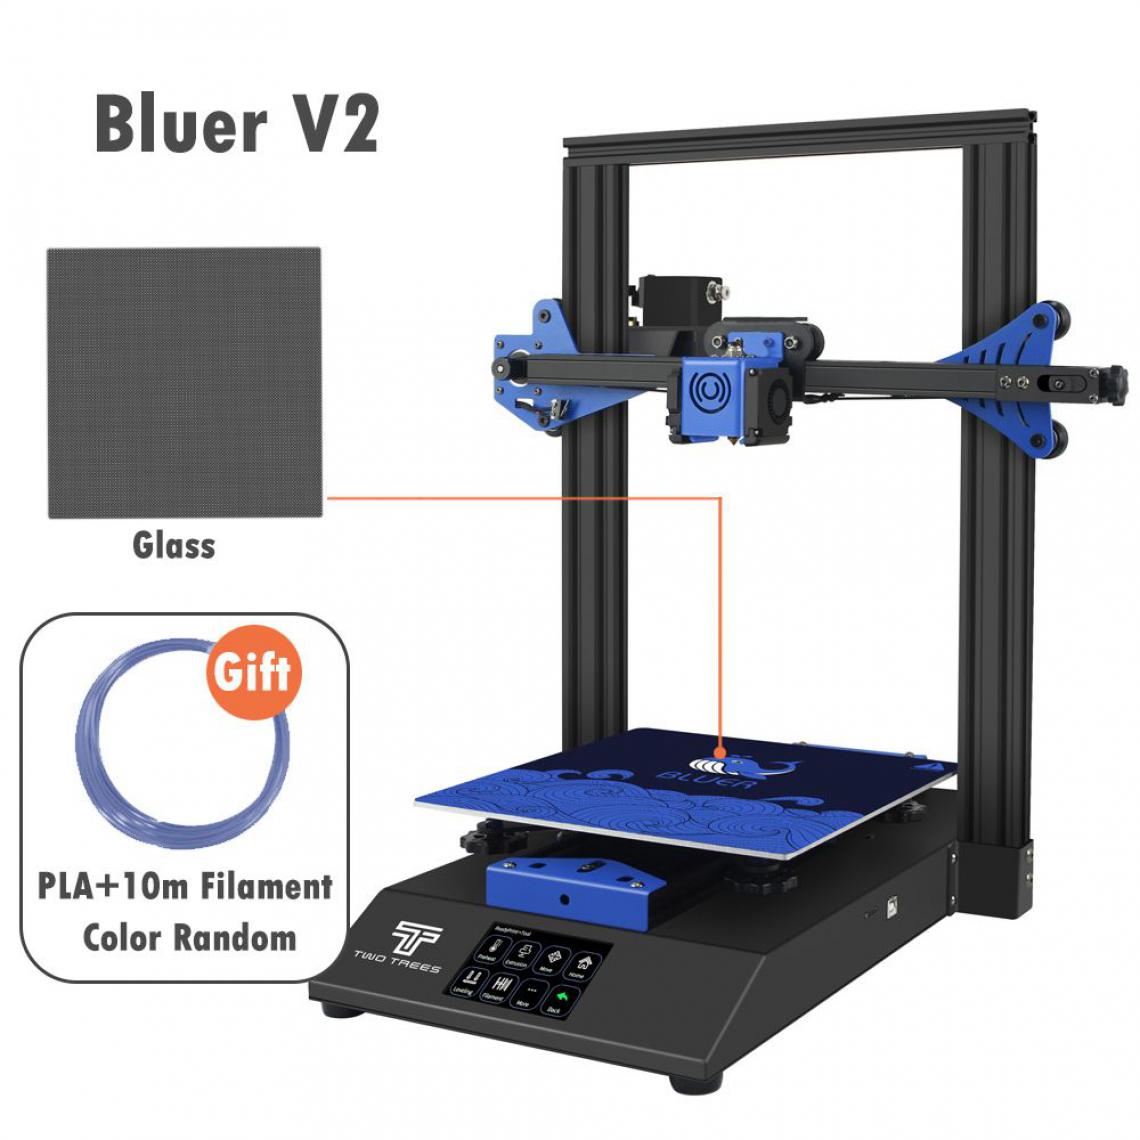 Generic - Imprimante 3D Bluer V2, avec Pilote Silencieux et Écran Tactile Couleur TFT de Grande Taille et PEI Magnétique  Convient pour Filament  PLA, ABS, PETG,Wood  41 *40 * 52 cm - Noir  - Imprimante 3D